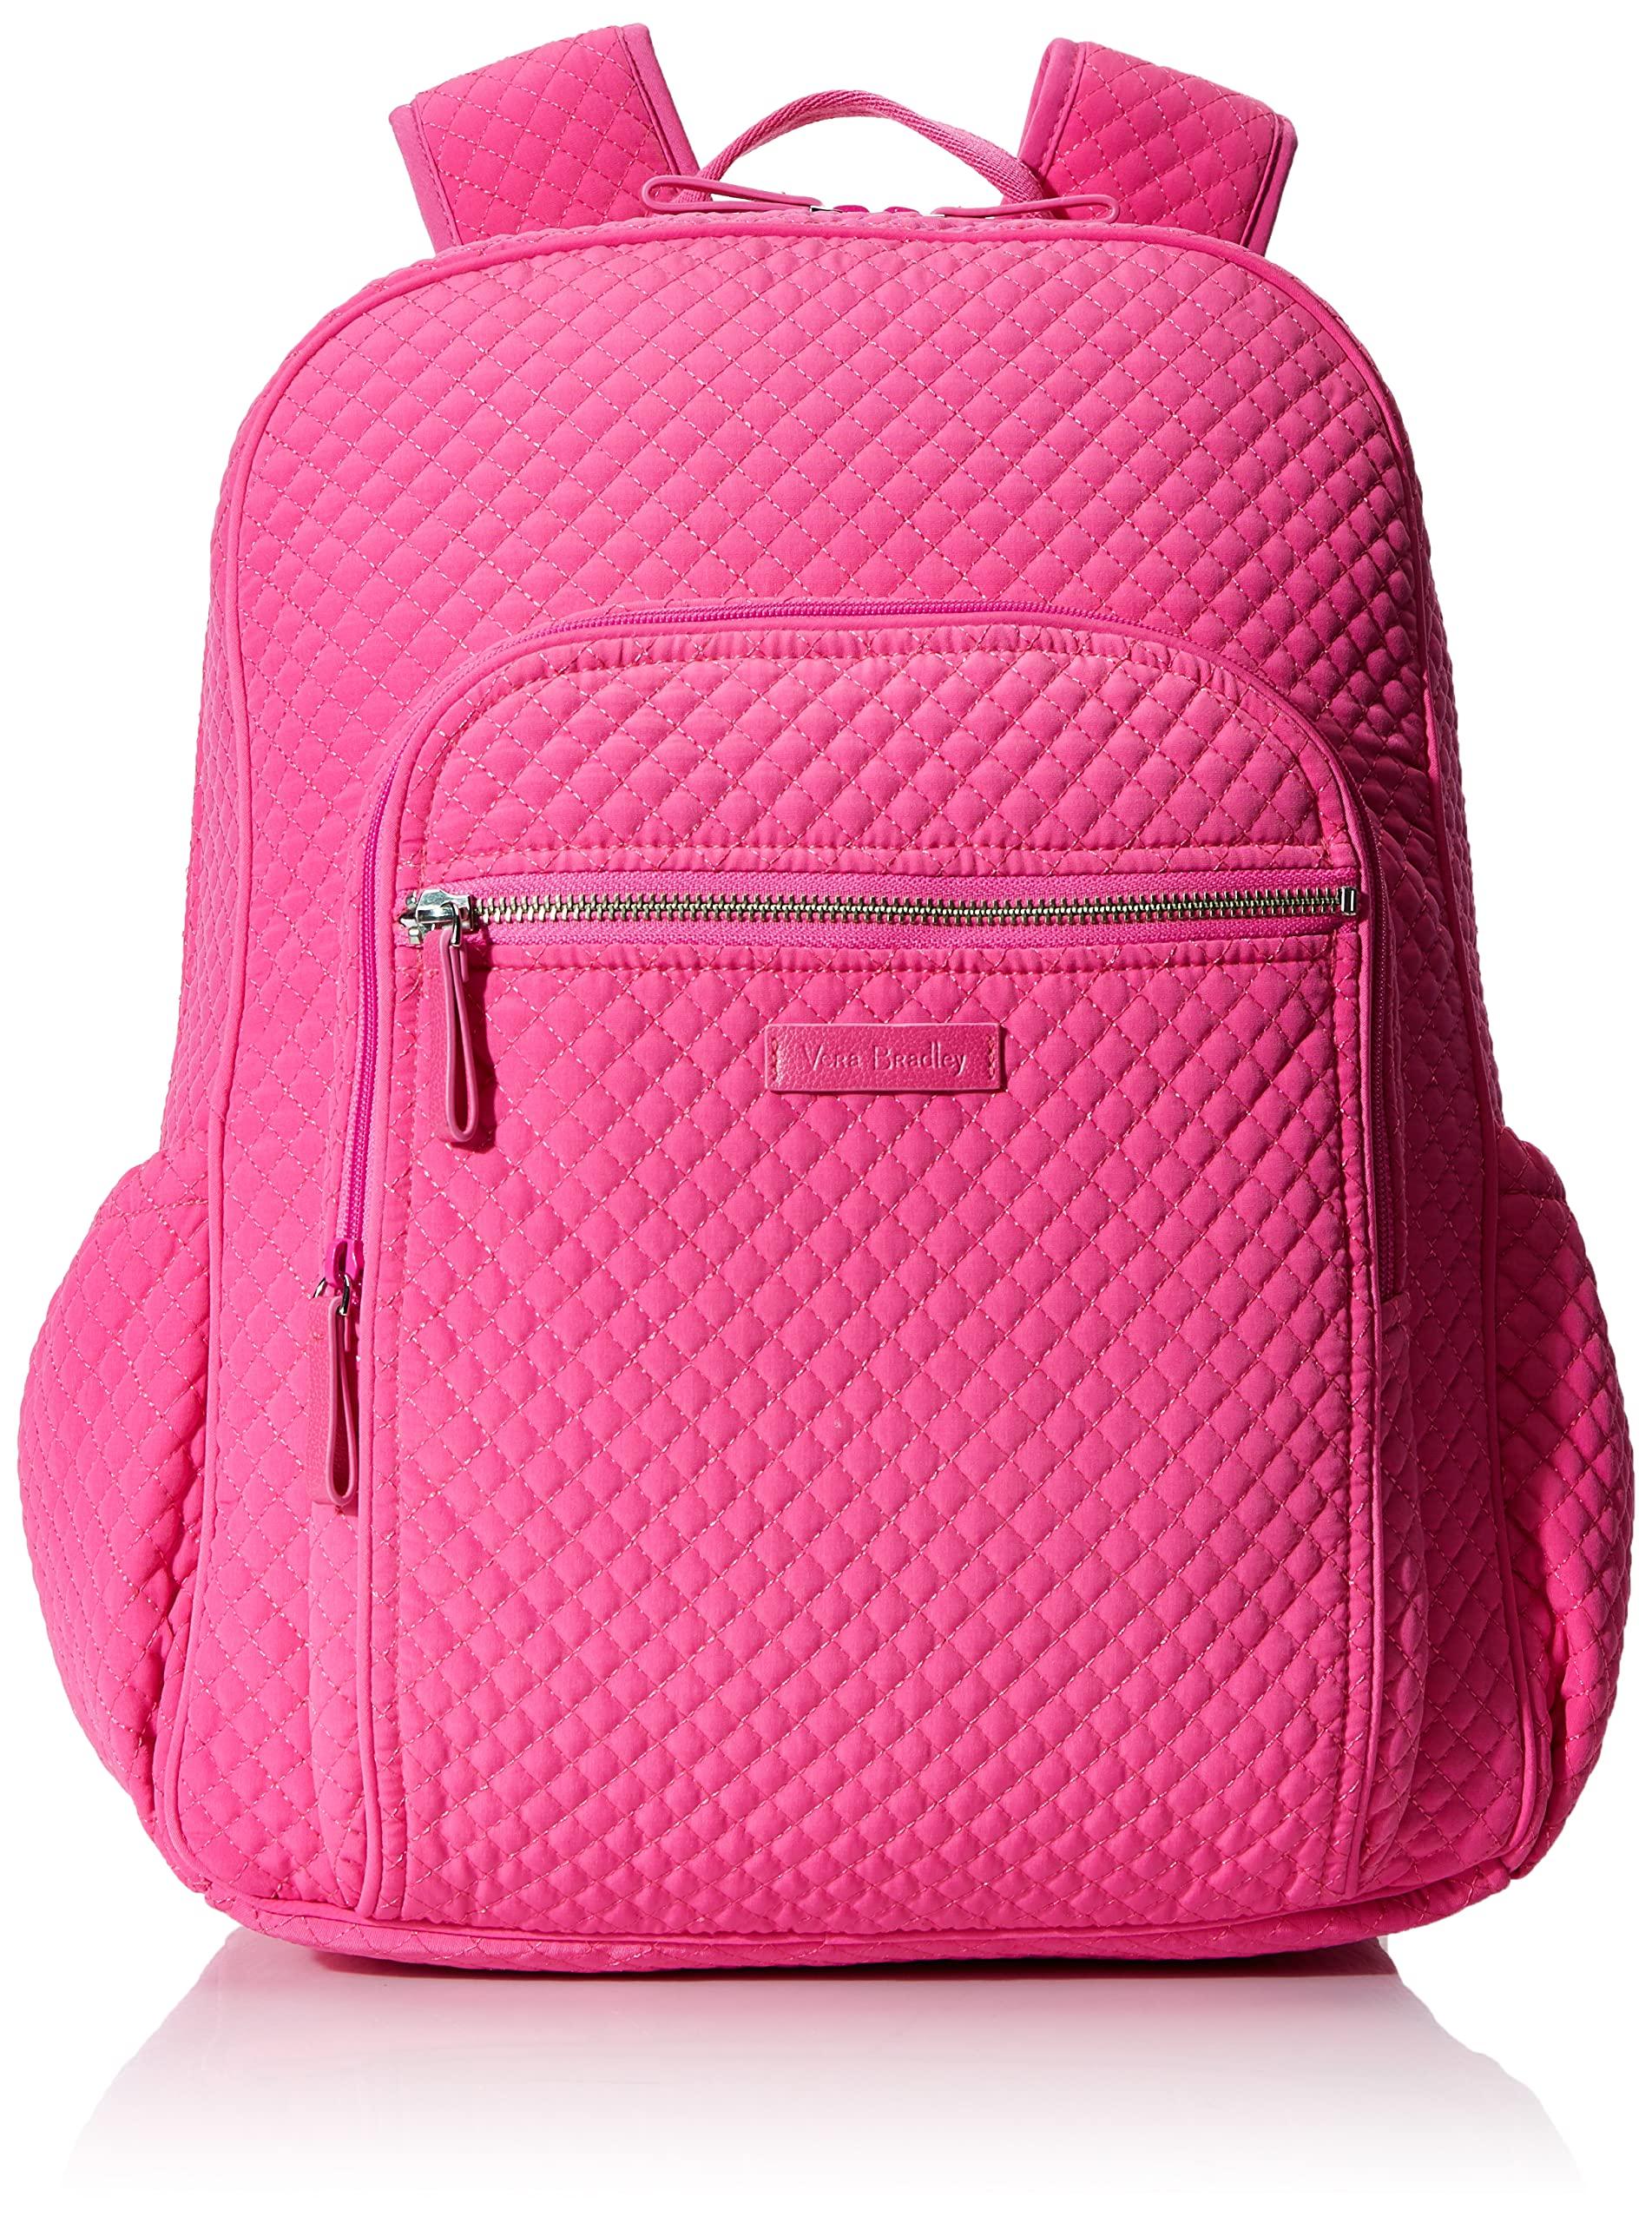 Vera Bradley Microfiber Campus Backpack in Pink